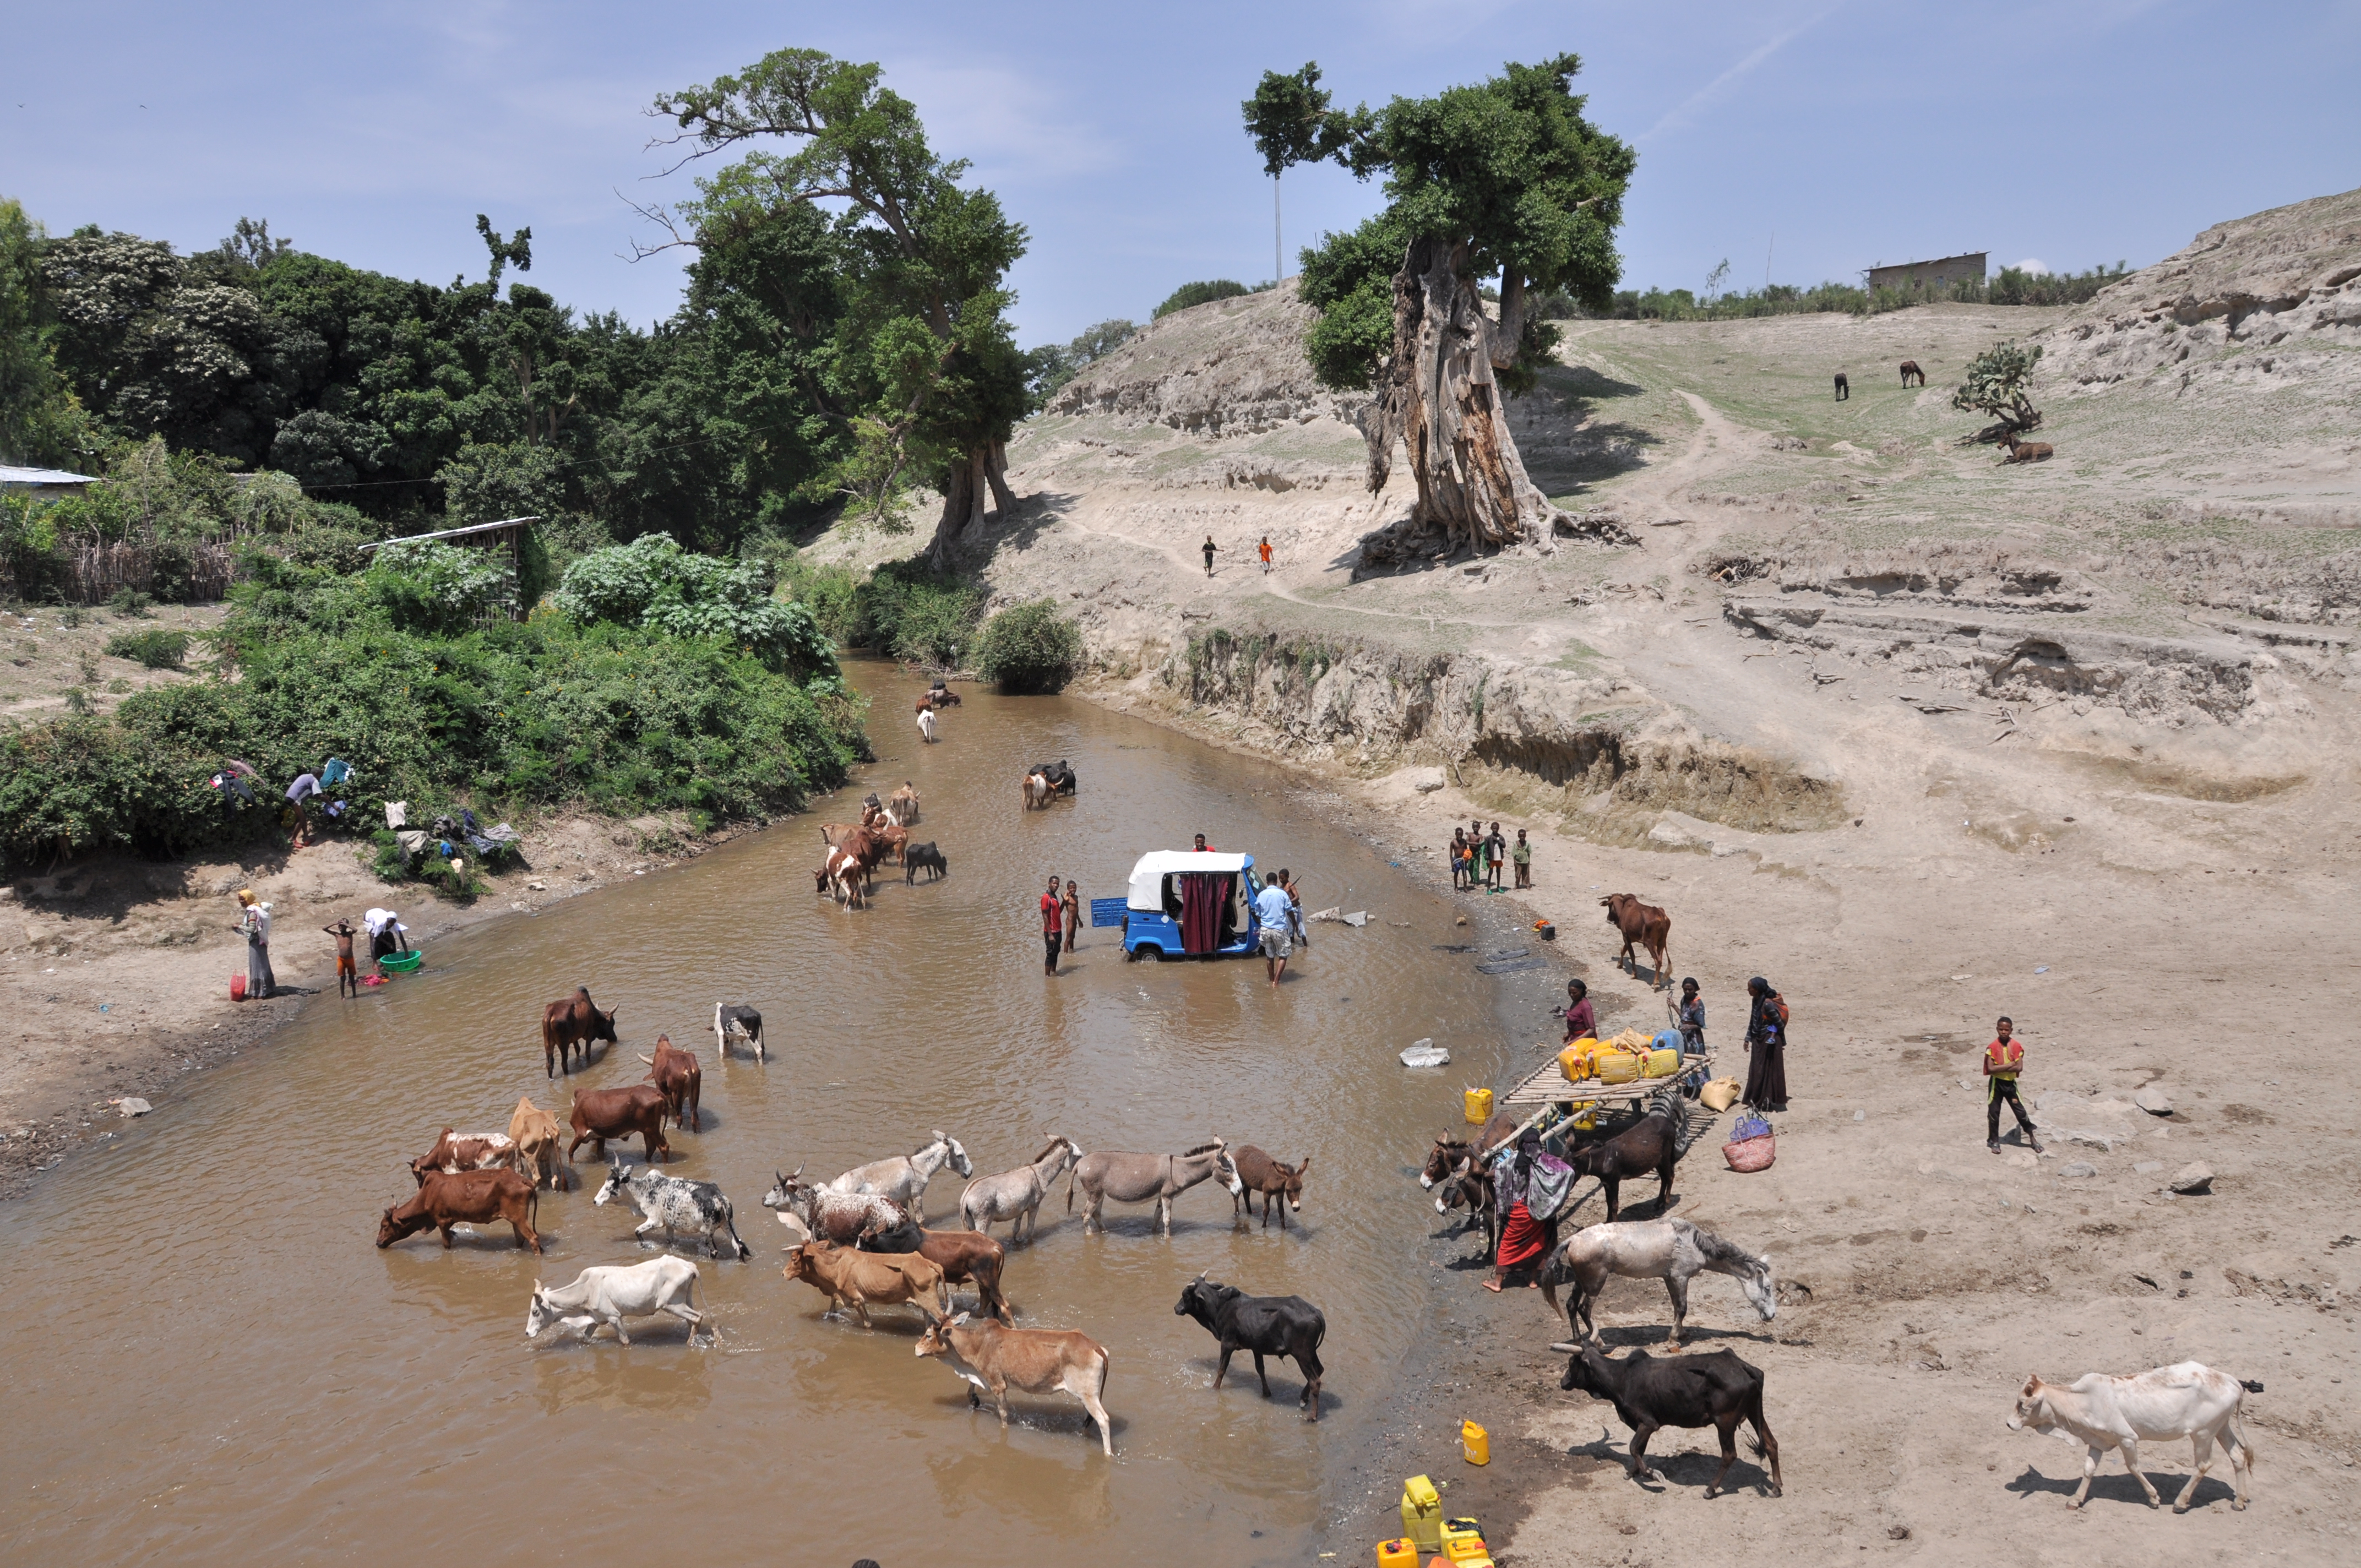 River scene in Ethiopia.